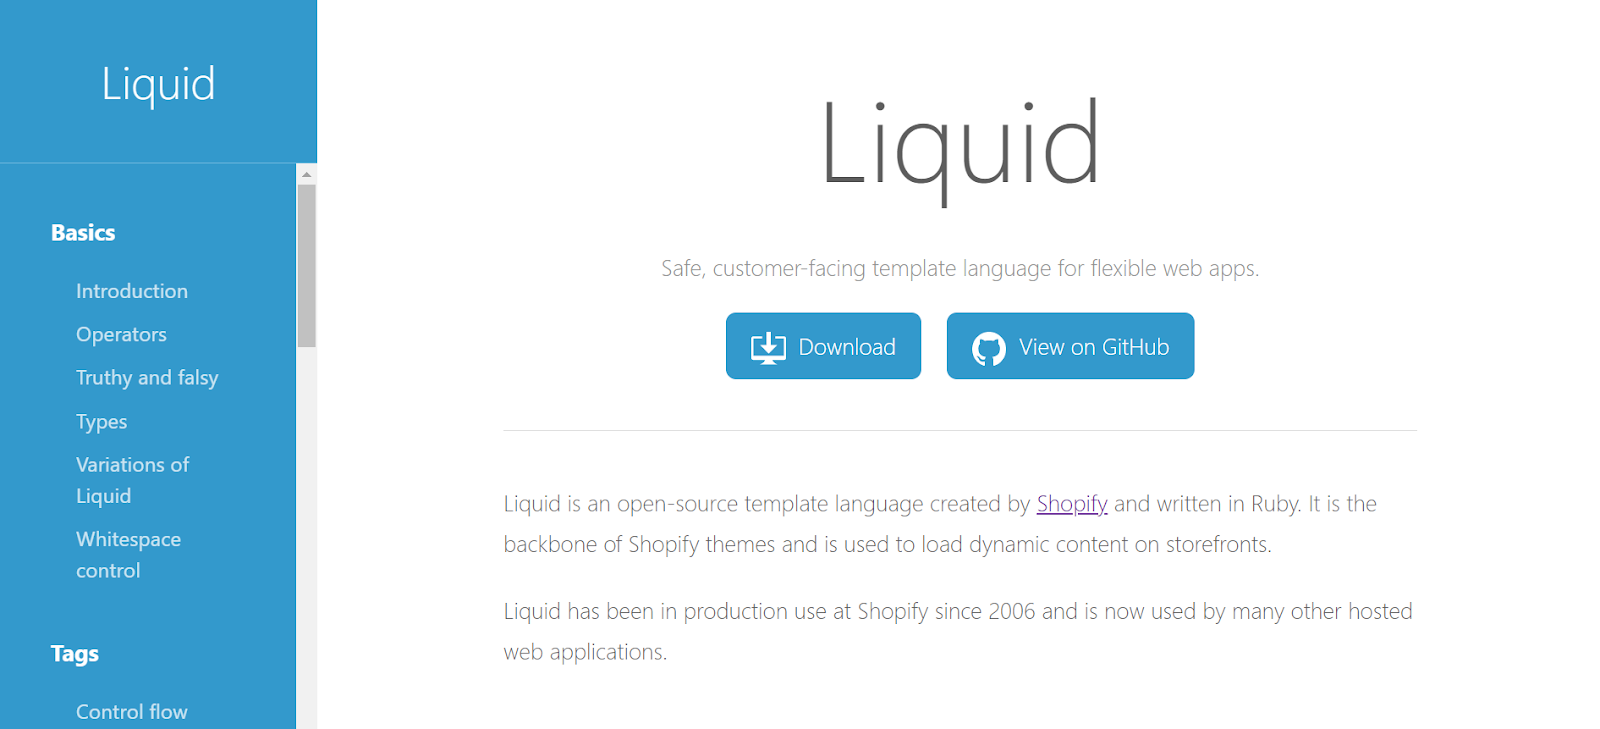 Fluency in Liquid